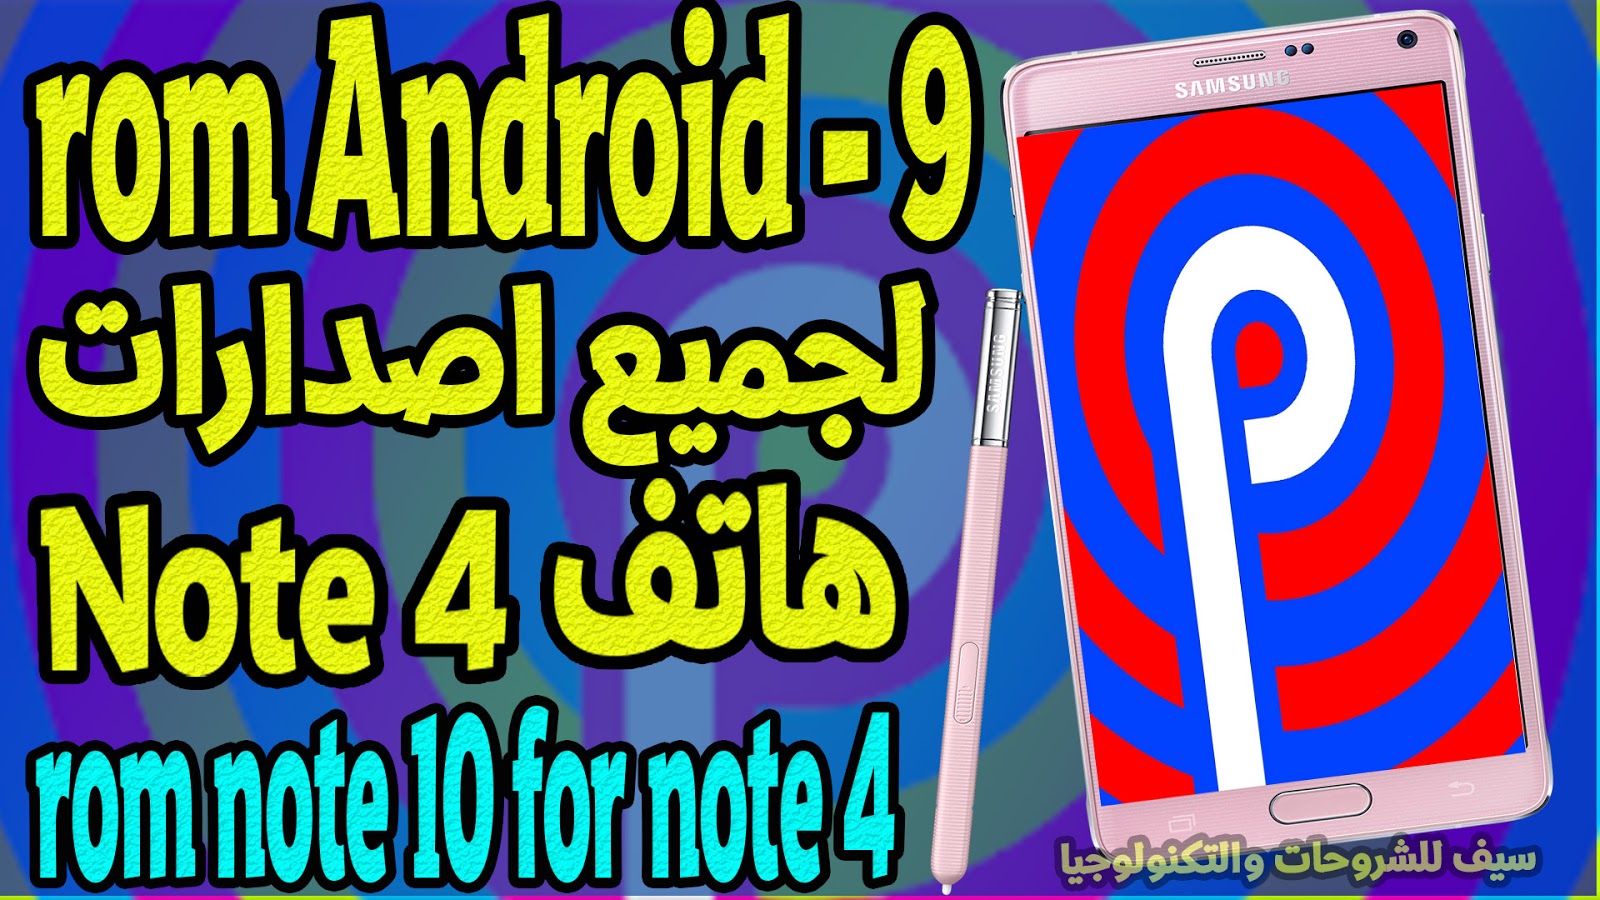 احصل علي  روم Note 10 اصدار اندرويد rom Android - 9 لجميع اصدارات هاتف نوت 4 - rom note 10 for note 4